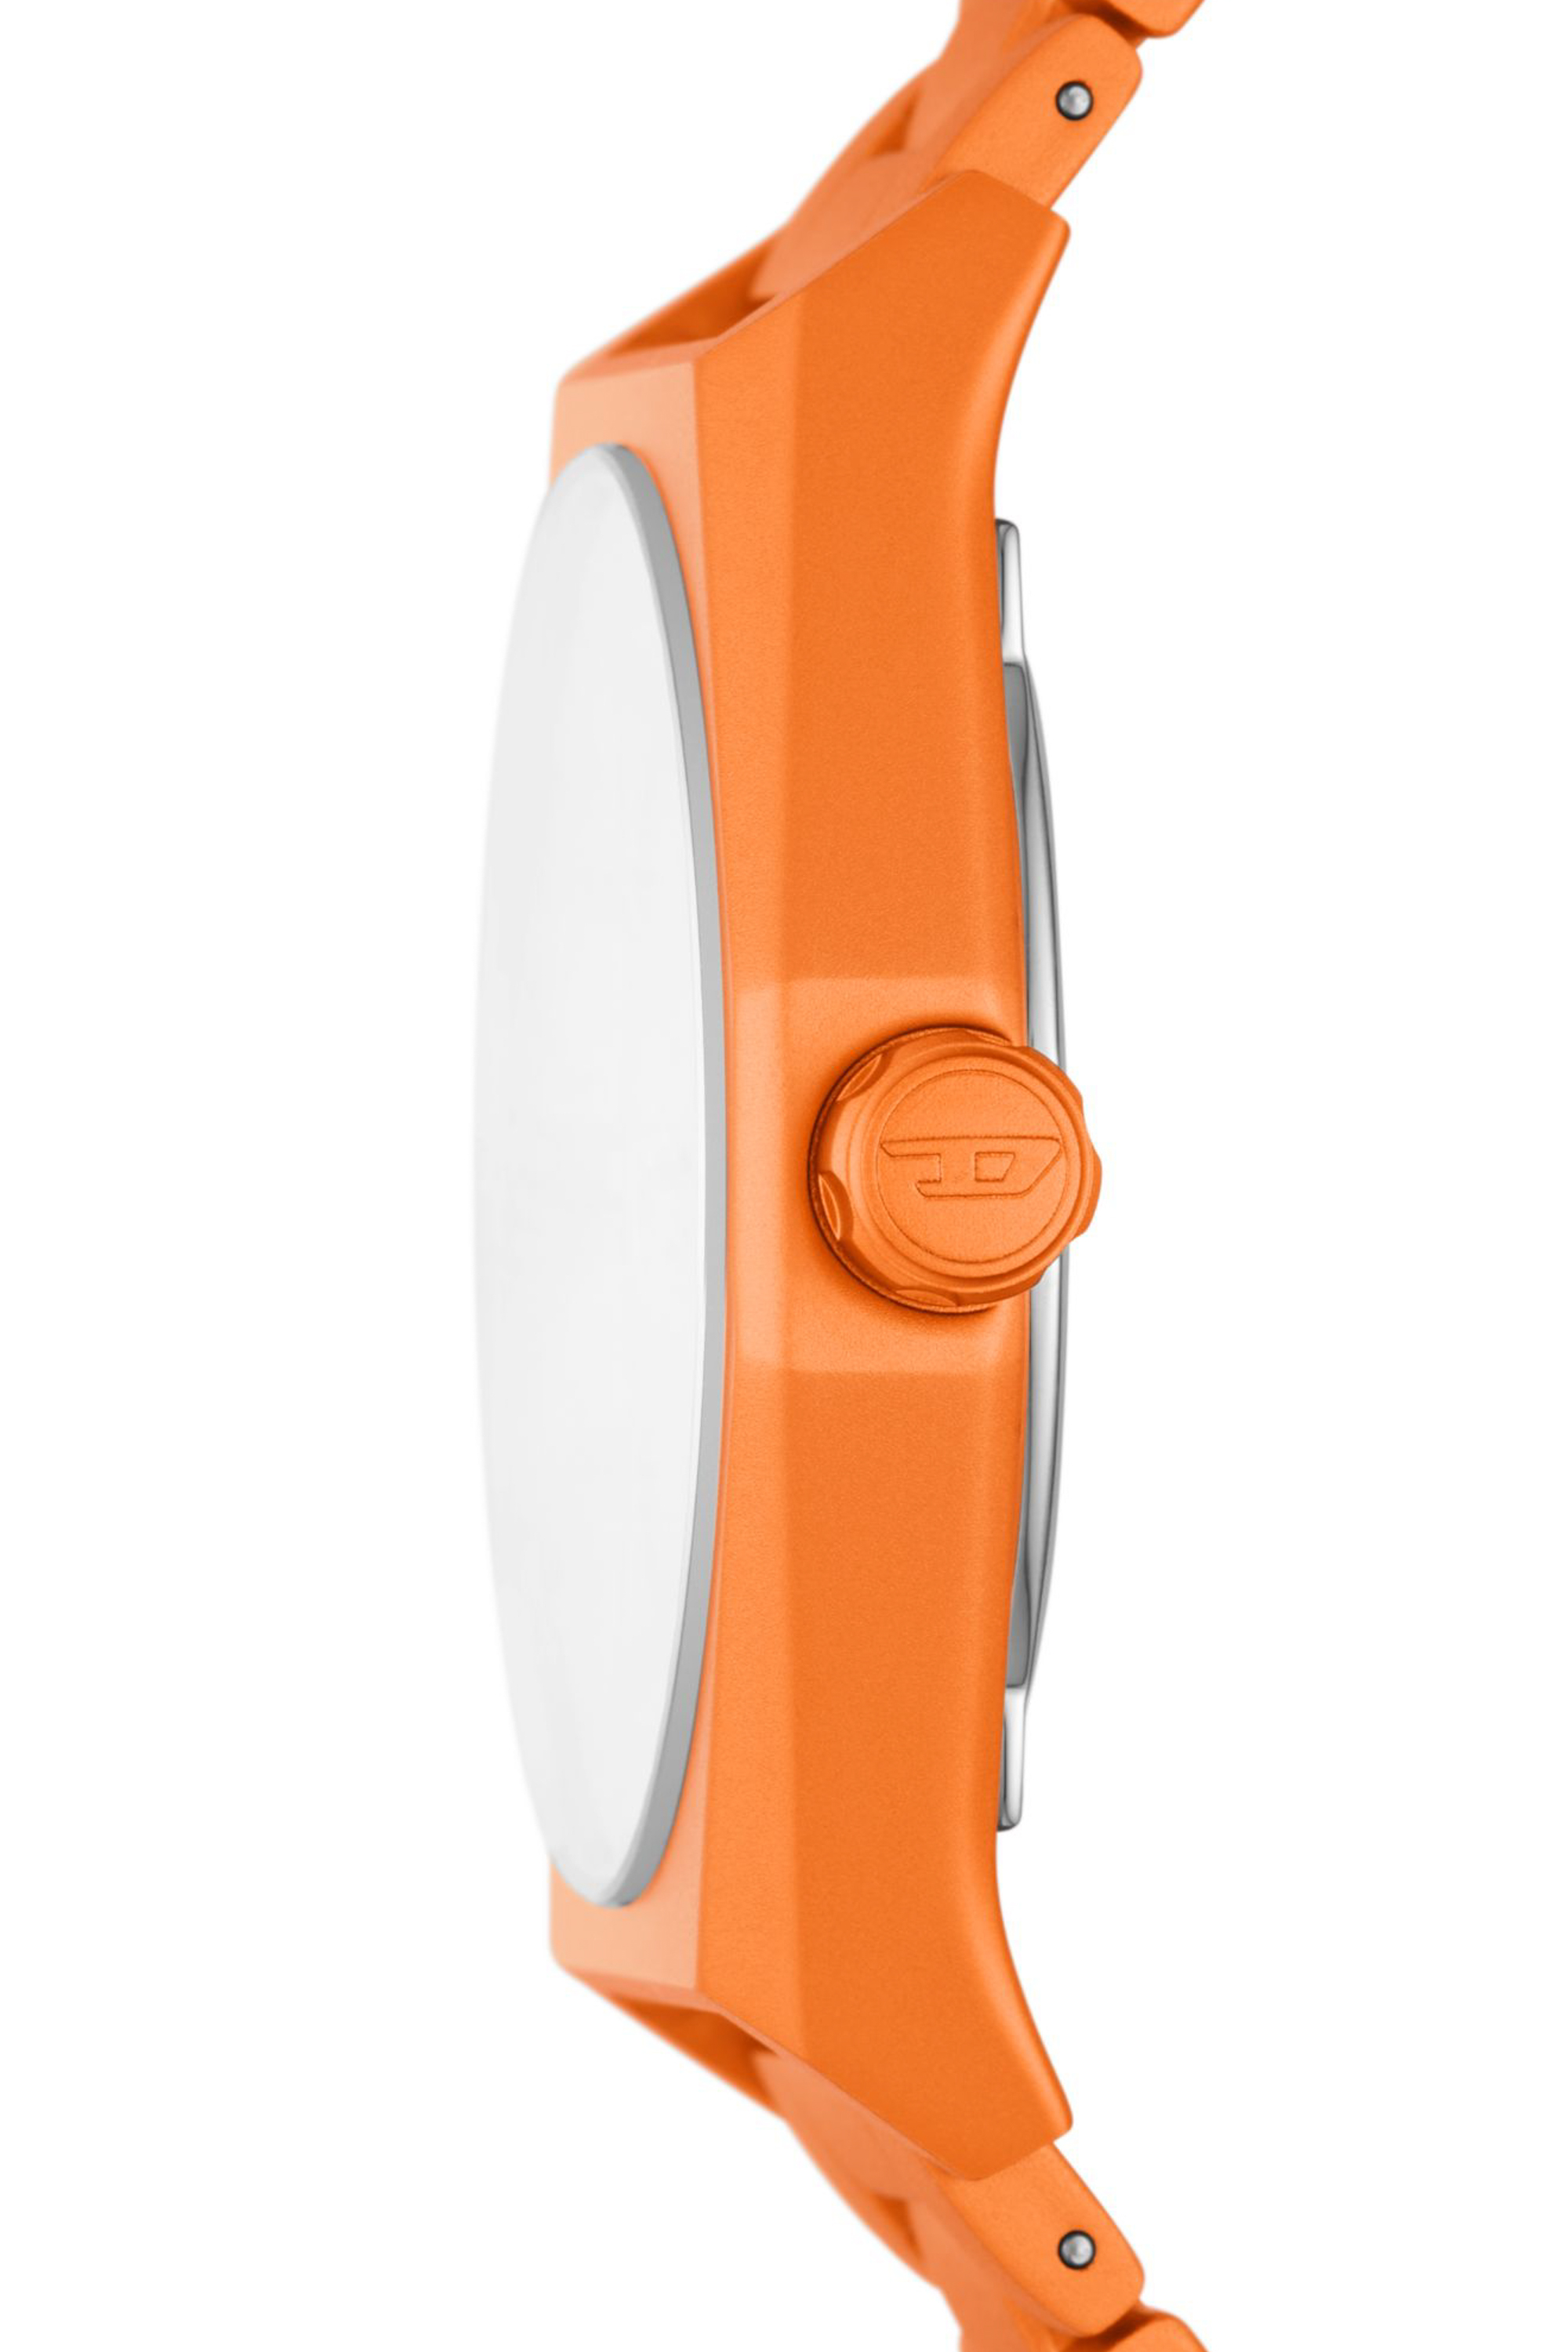 Diesel - DZ2209, Herren Scraper Armbanduhr aus orangem Aluminium mit drei Zeigern in Orange - Image 3